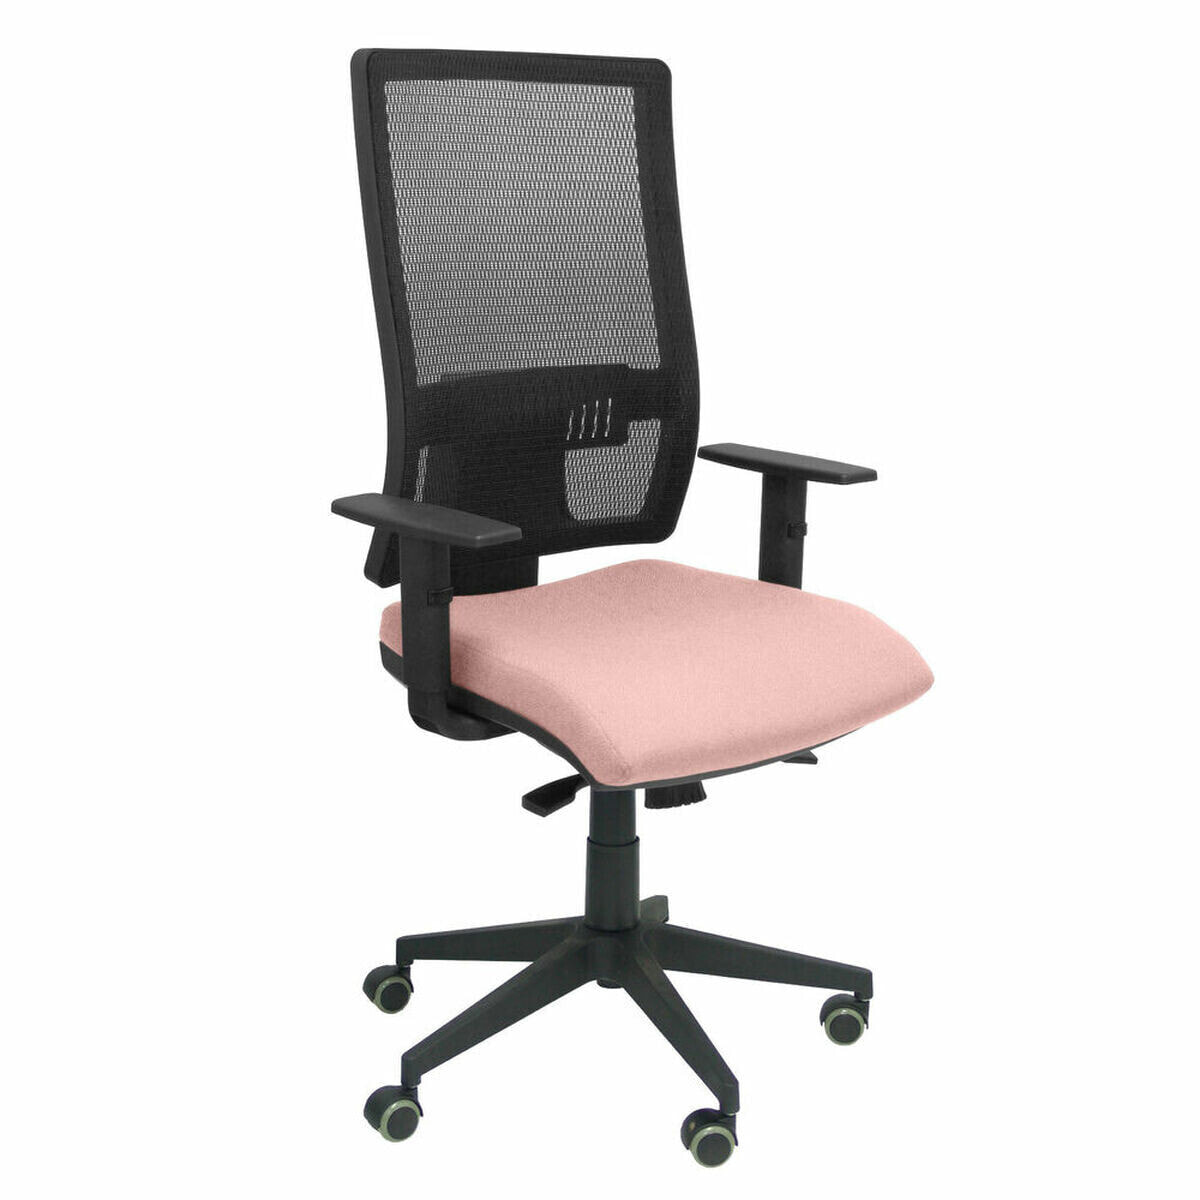 Офисный стул Horna bali P&C LI710SC Розовый Светло Pозовый